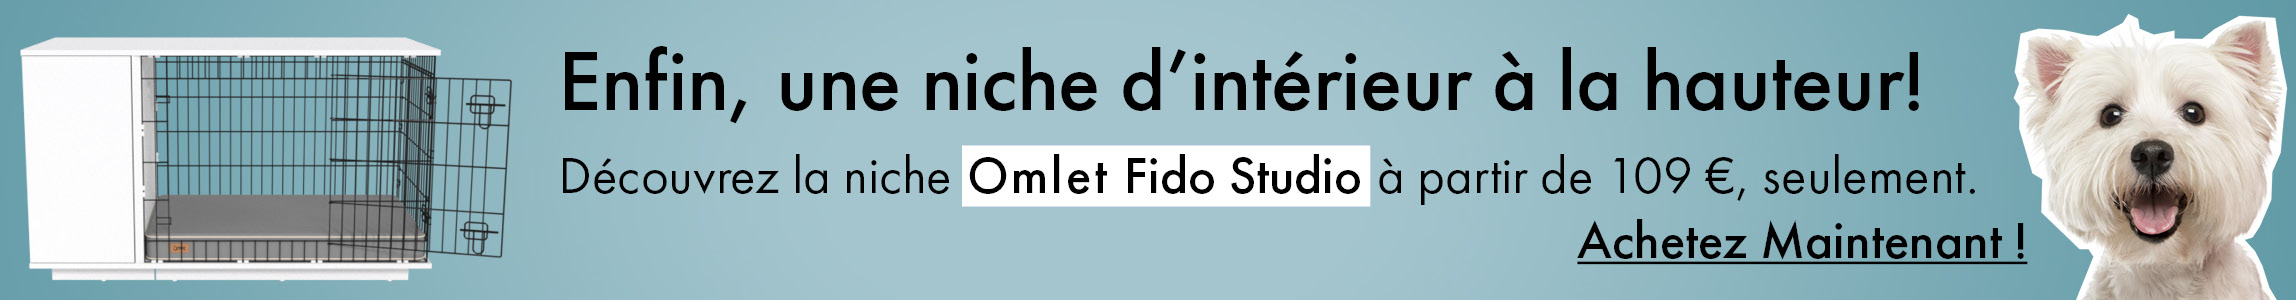 Découvrez la niche d'intérieur Omlet Fido Studio